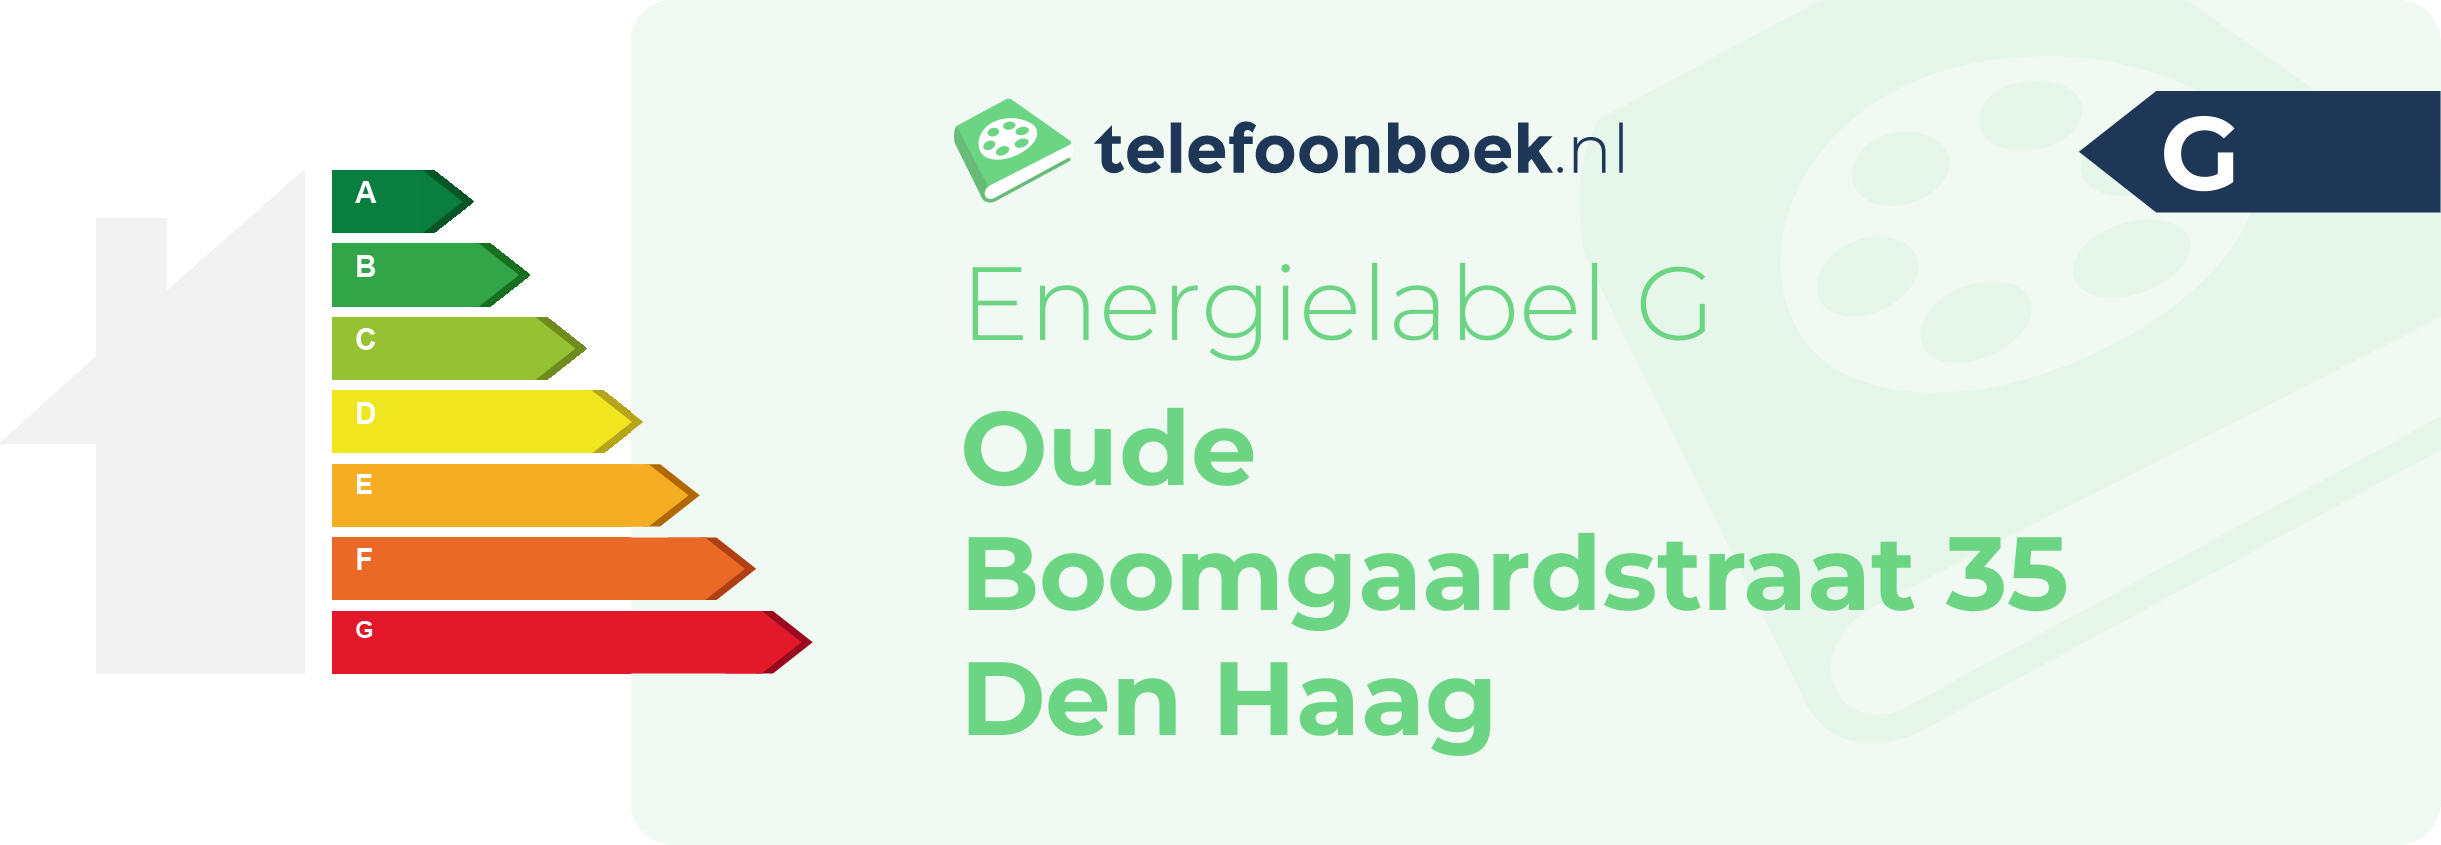 Energielabel Oude Boomgaardstraat 35 Den Haag